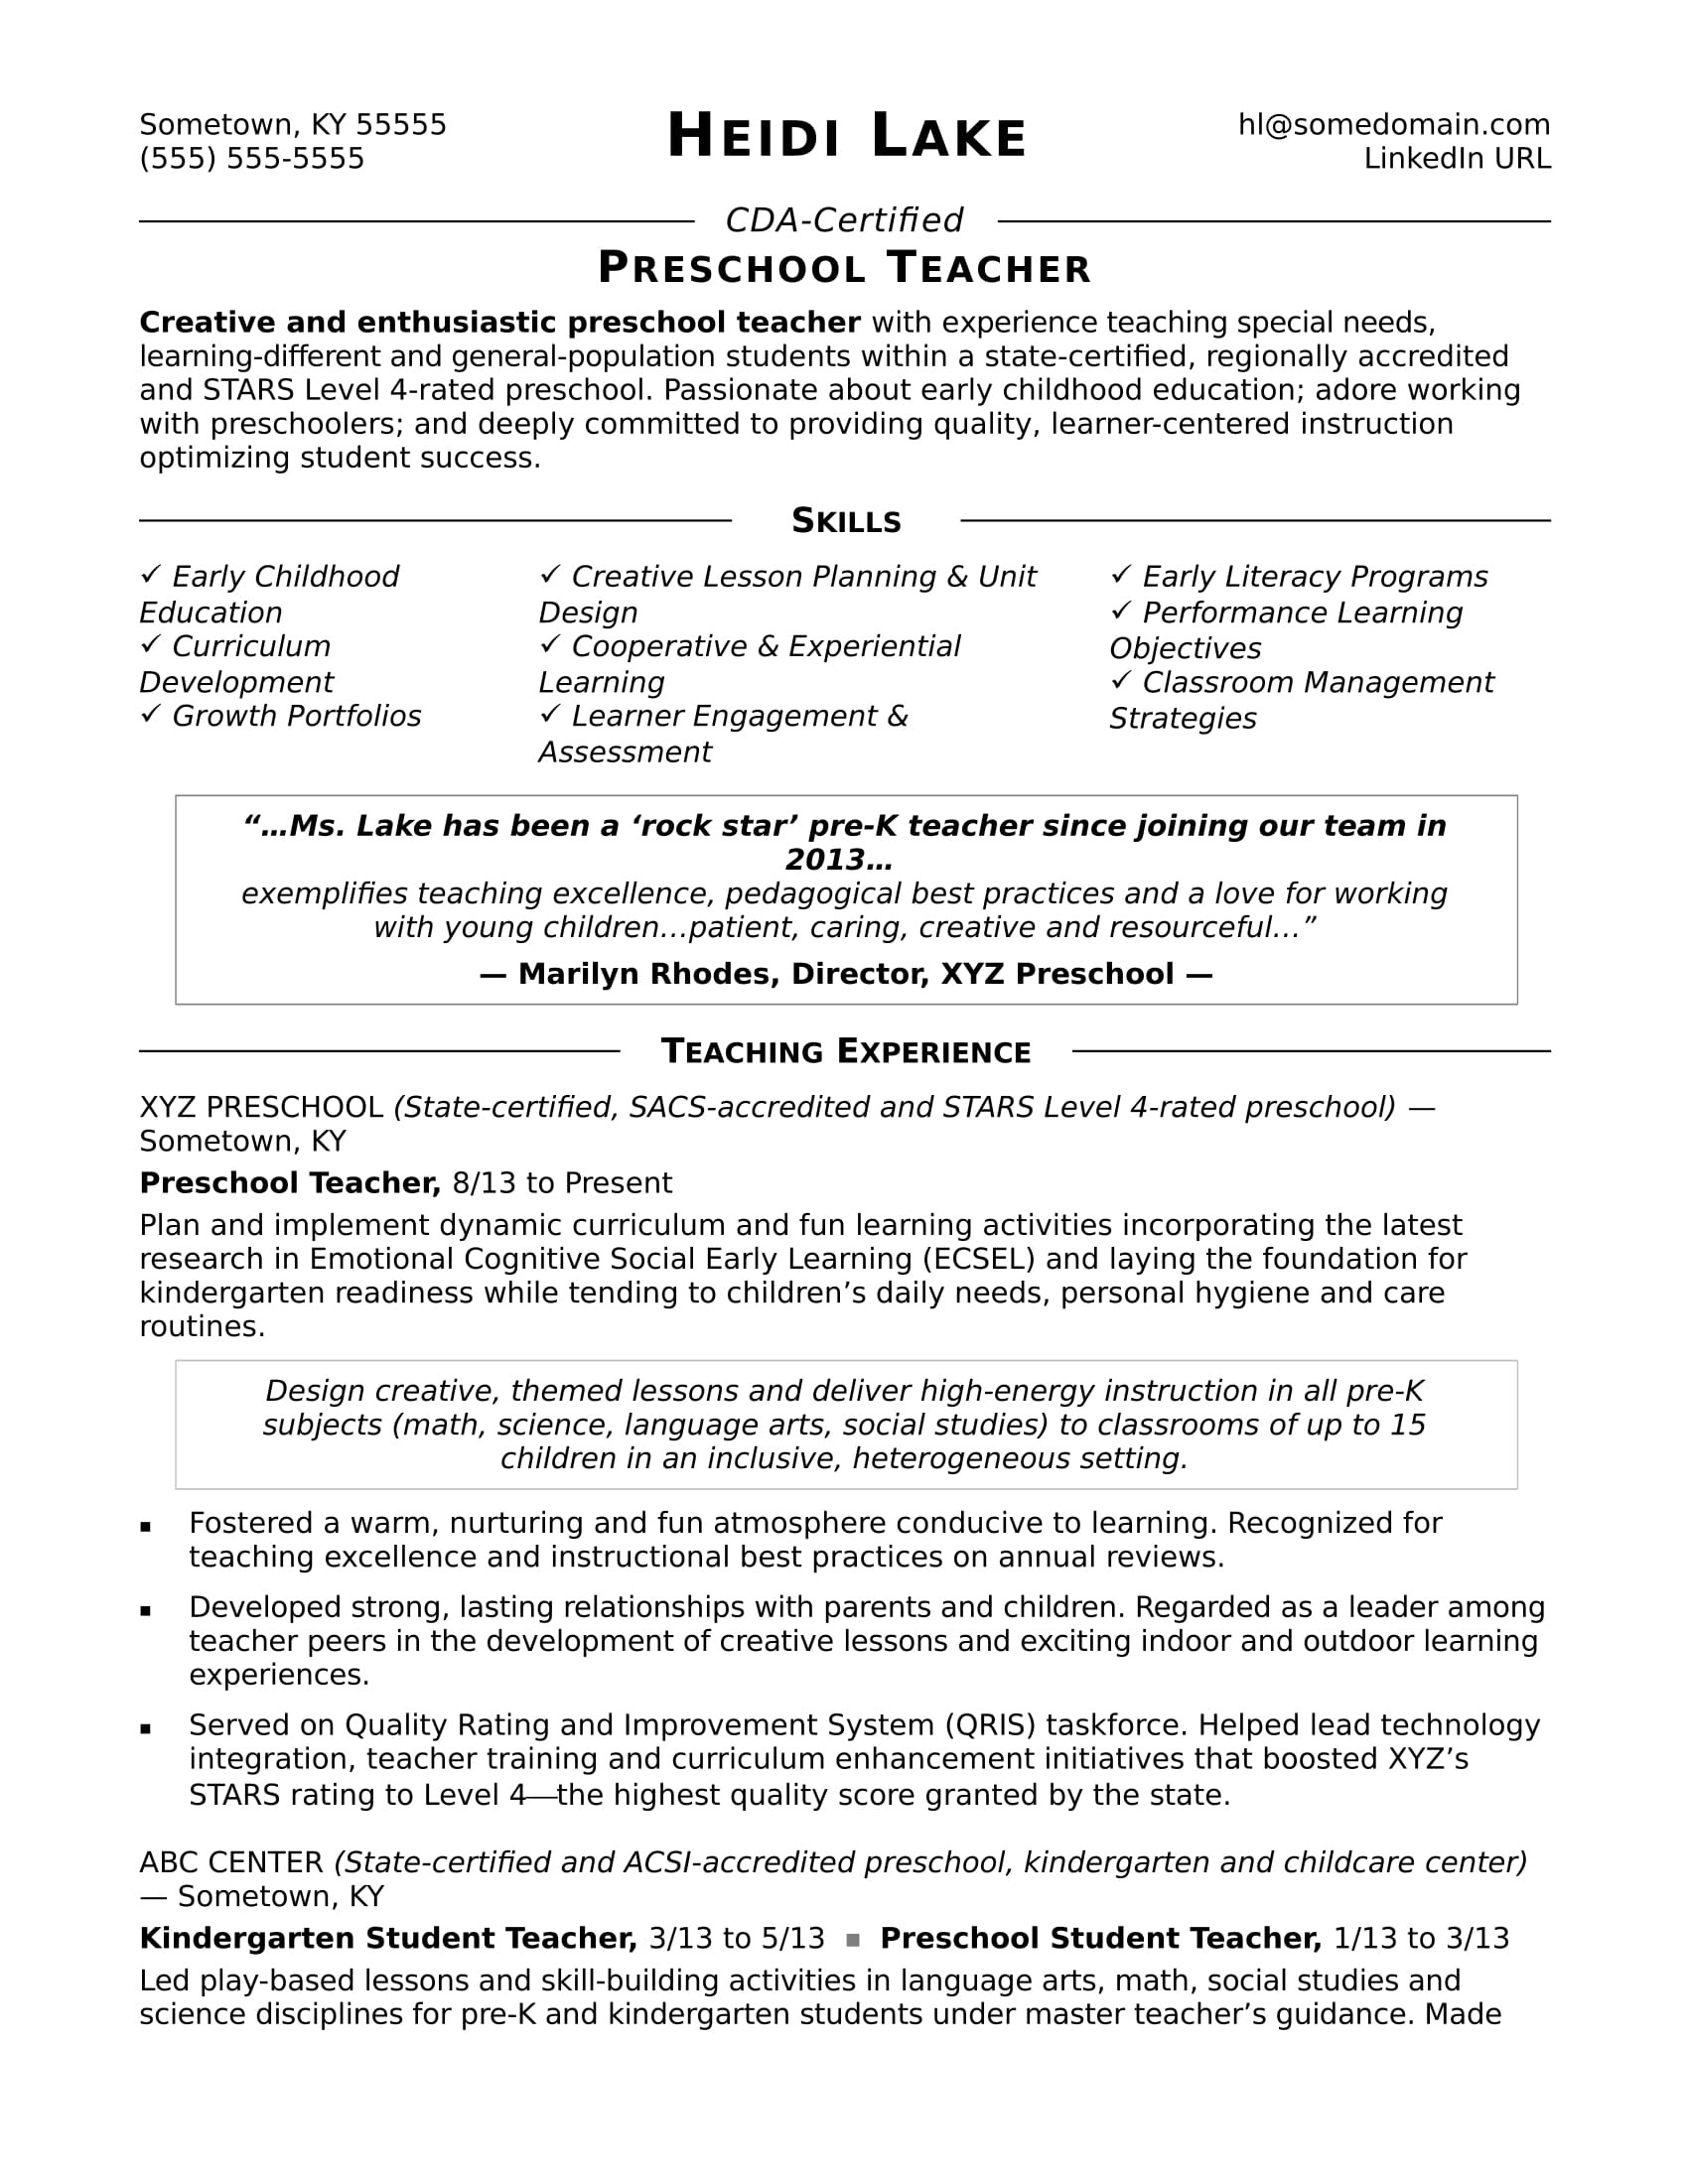 Resume Samples for Daycare Teacher assistant Preschool Teacher Resume Sample Monster.com